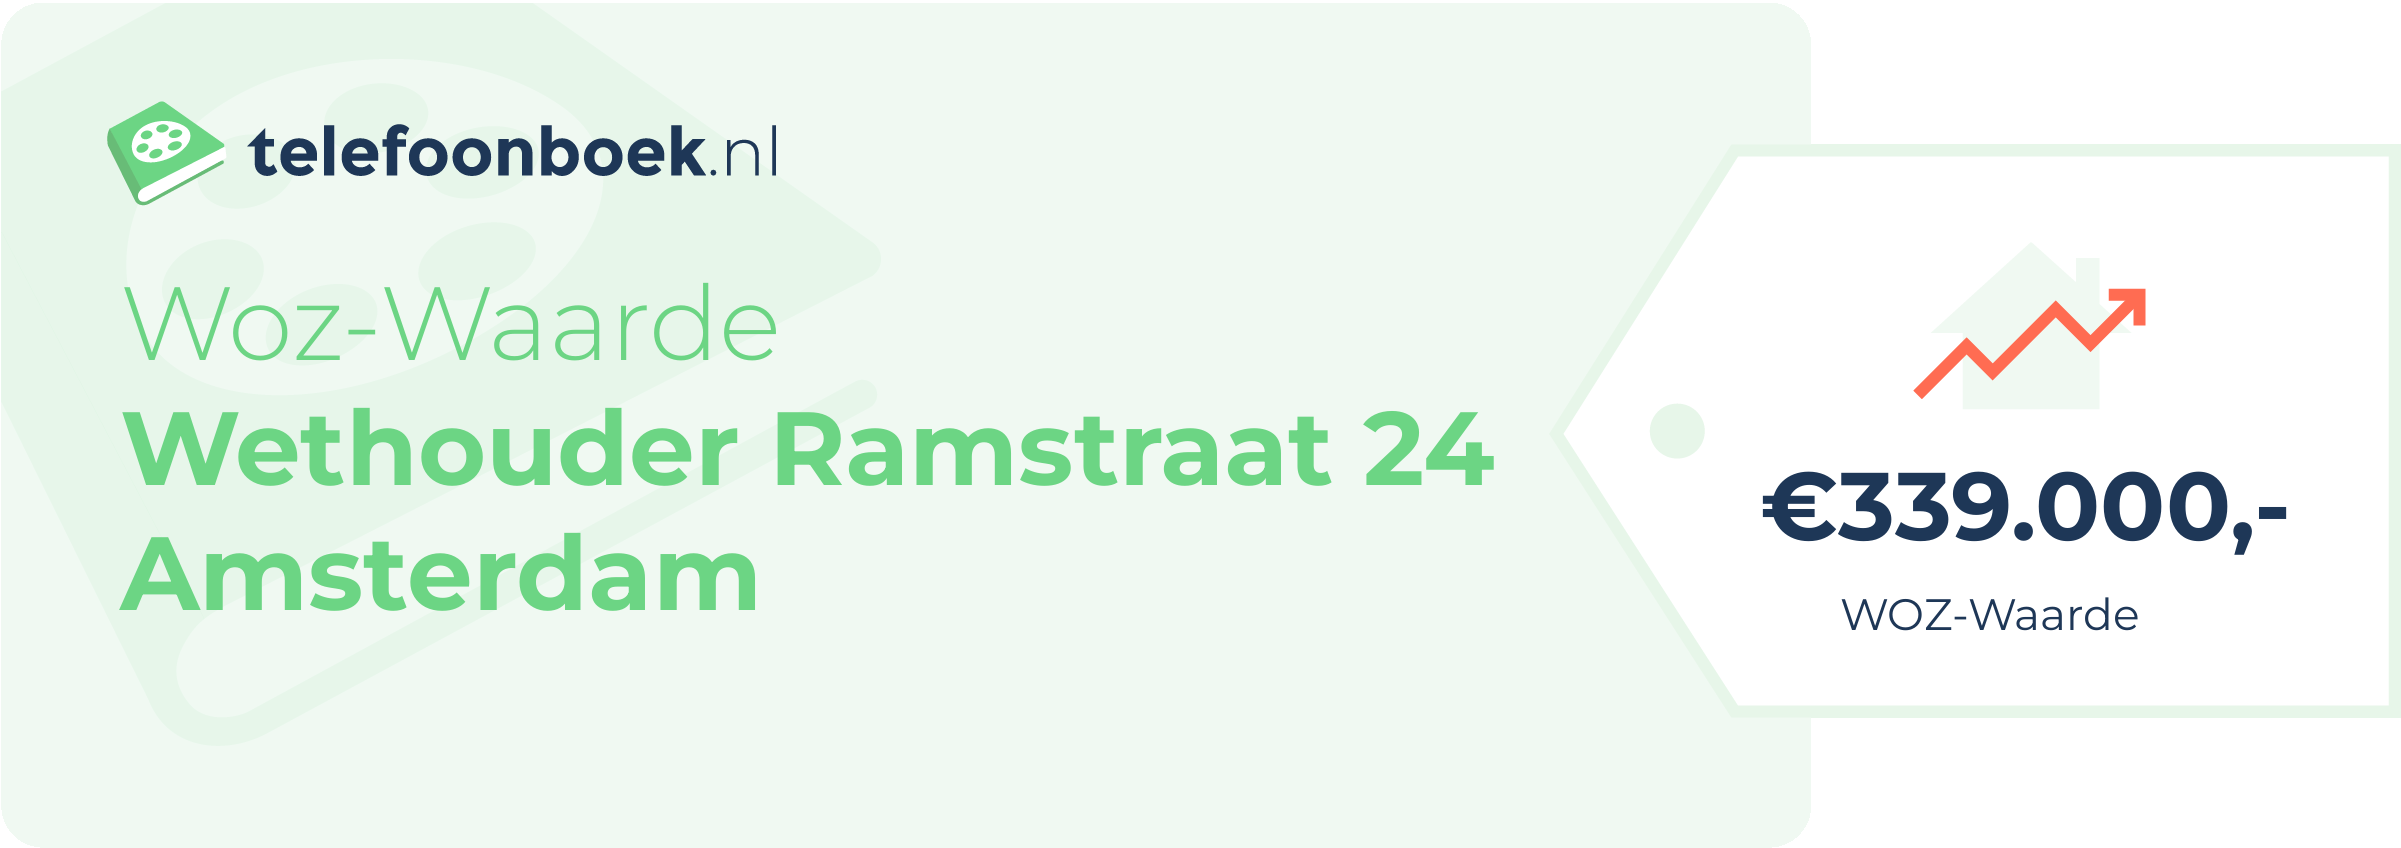 WOZ-waarde Wethouder Ramstraat 24 Amsterdam